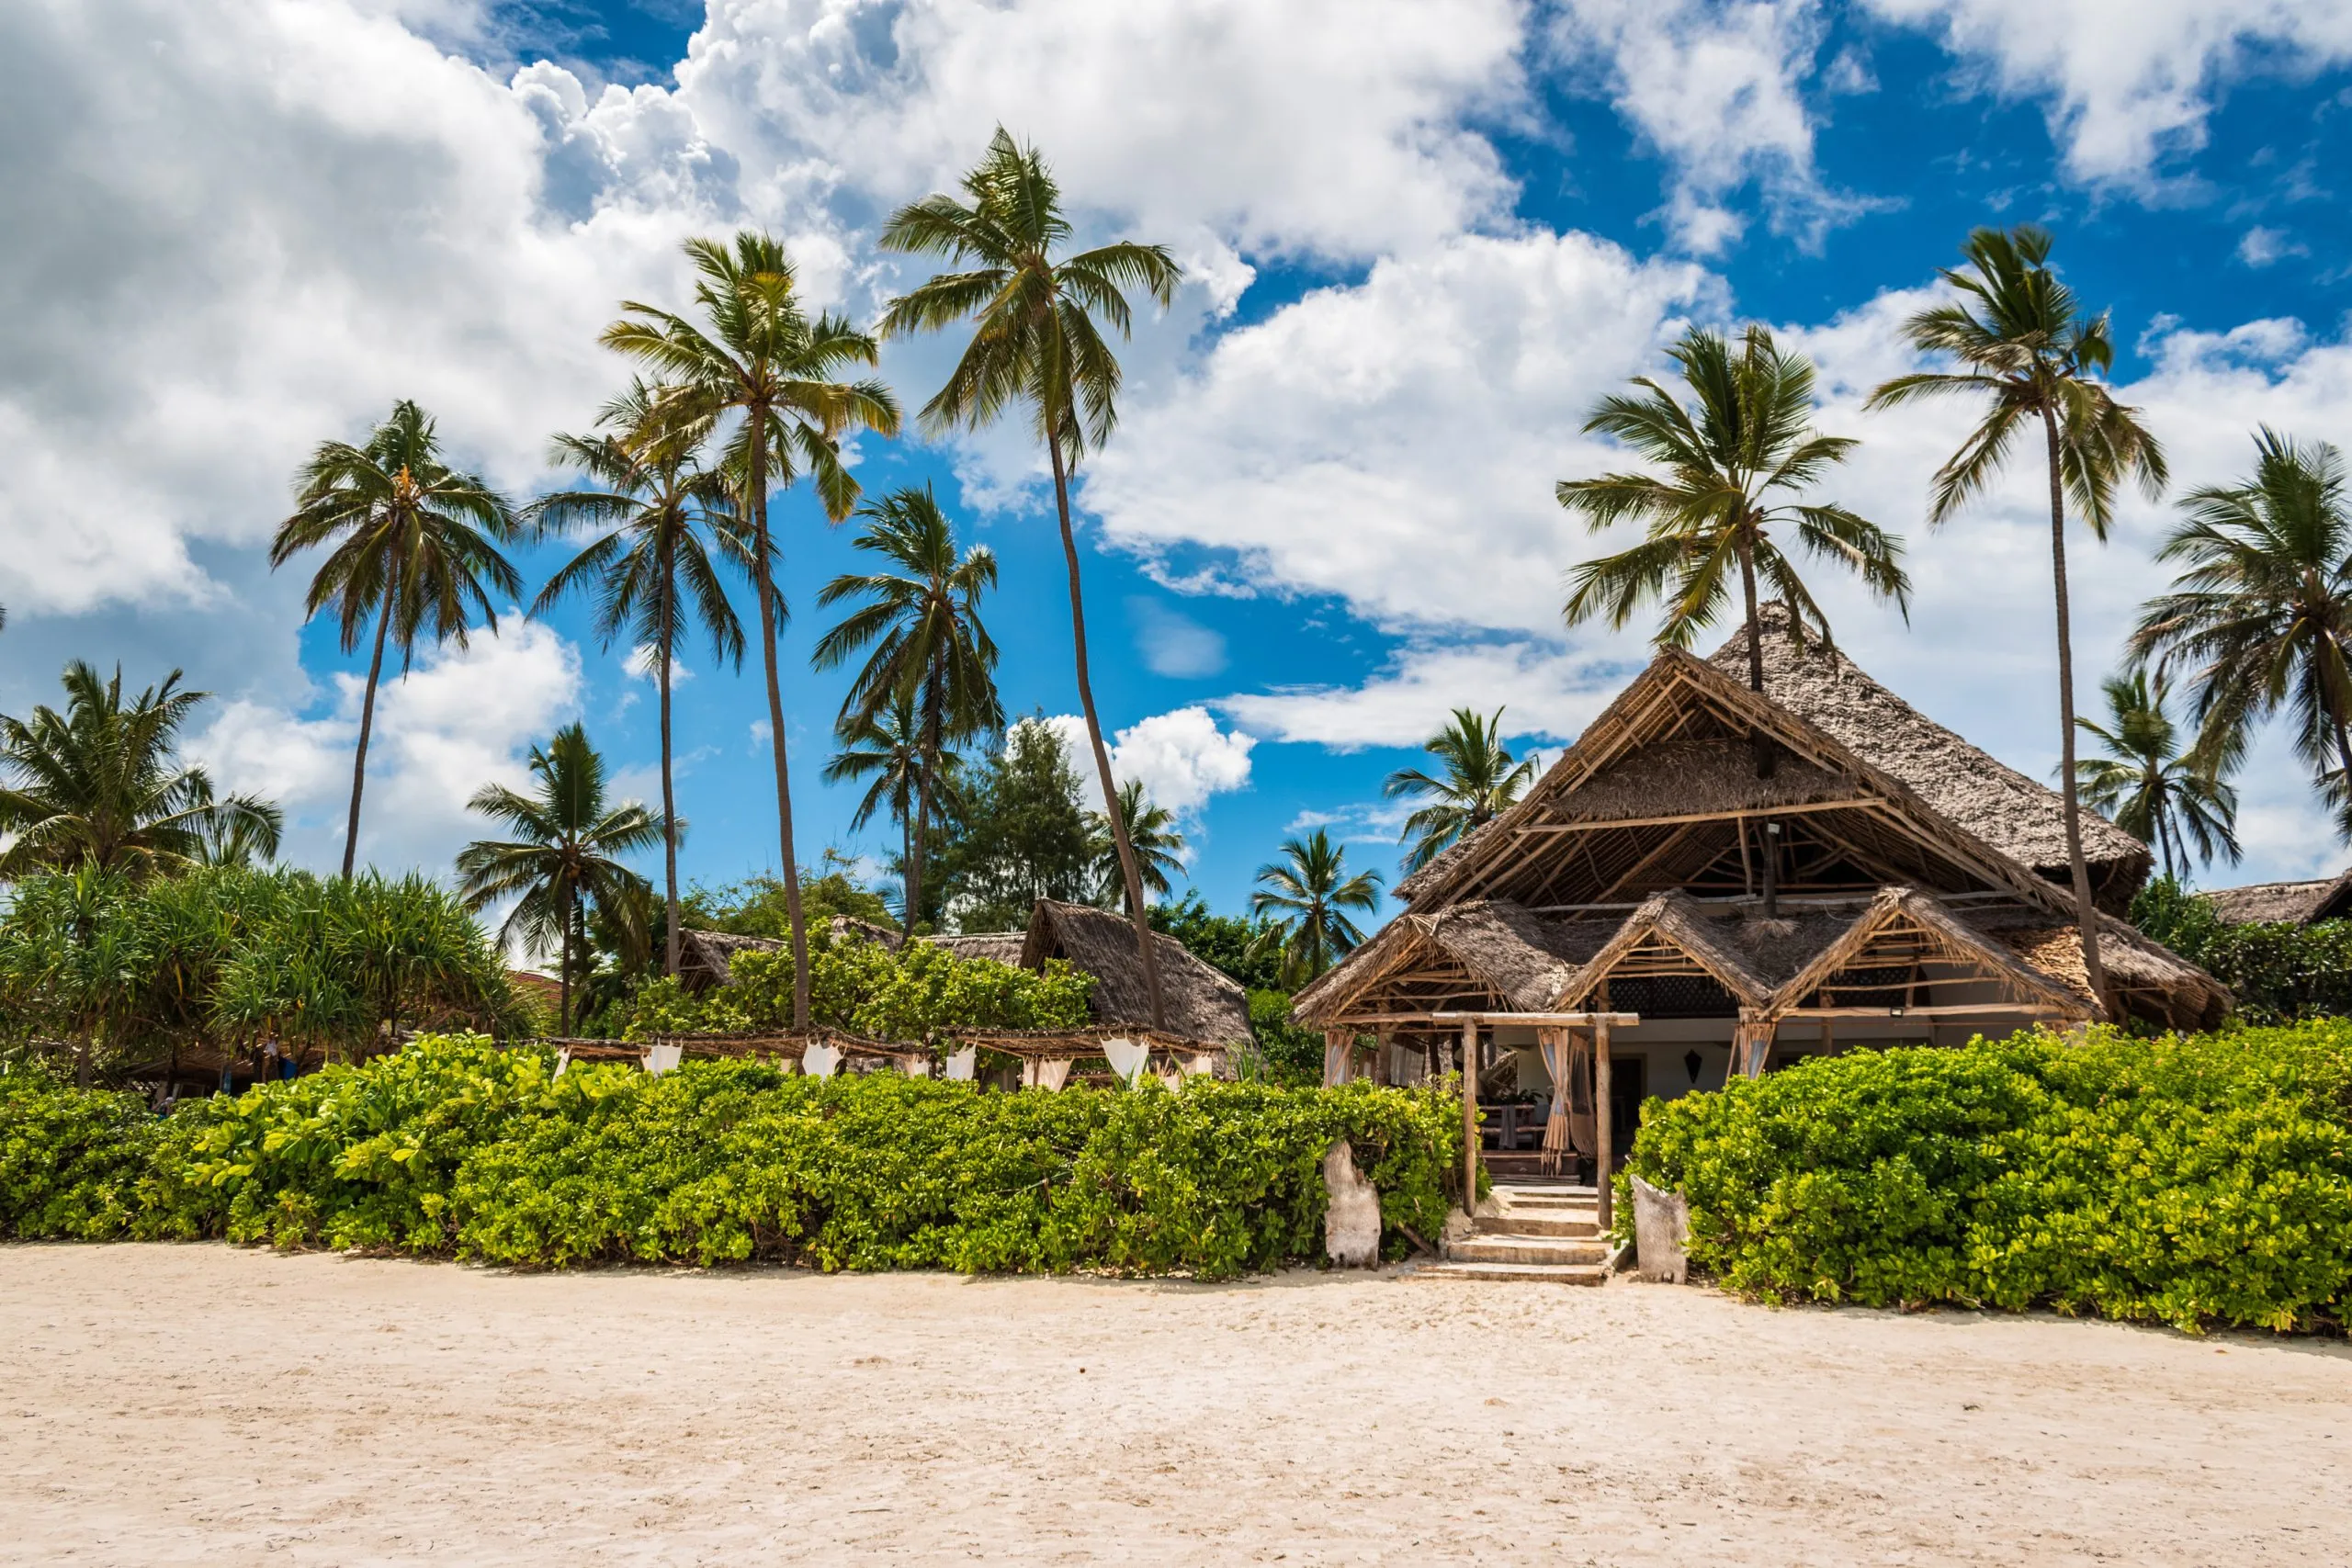 Vista della casa con tetto di paglia situata tra le palme sulla spiaggia di Matemwe, Zanzibar, Tanzania, Africa